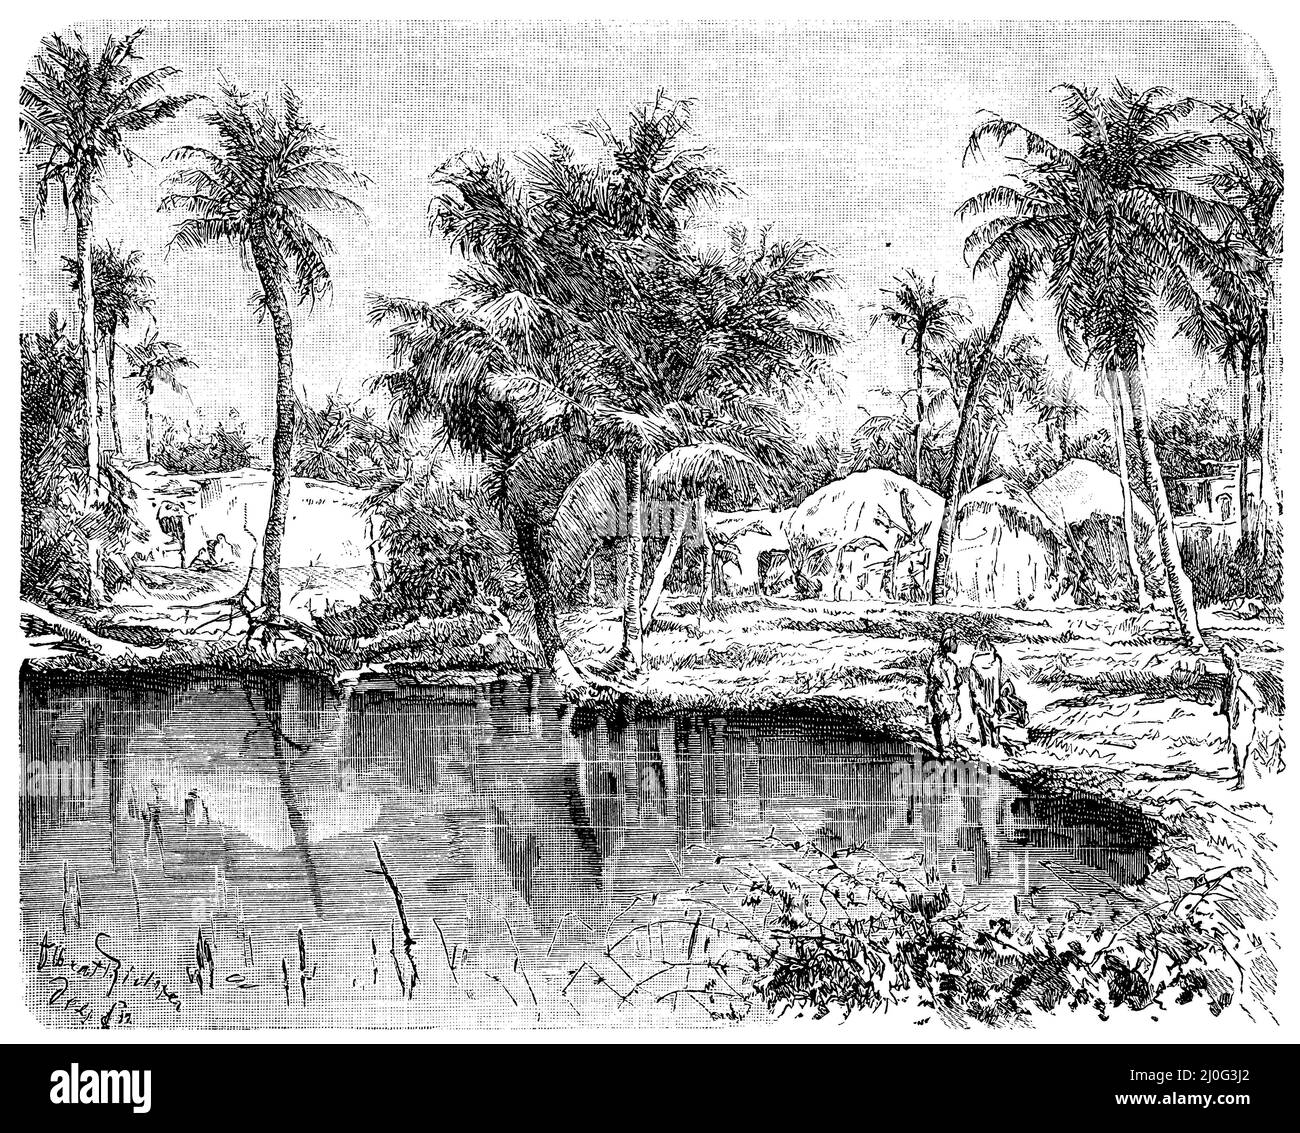 Village bengali dans la région de Calcutta, , Albert Richter (livre de géographie, 1885), Bengalisches Dorf in der Gegend von Kalkutta, Village bengali dans la région de Calcutta Banque D'Images